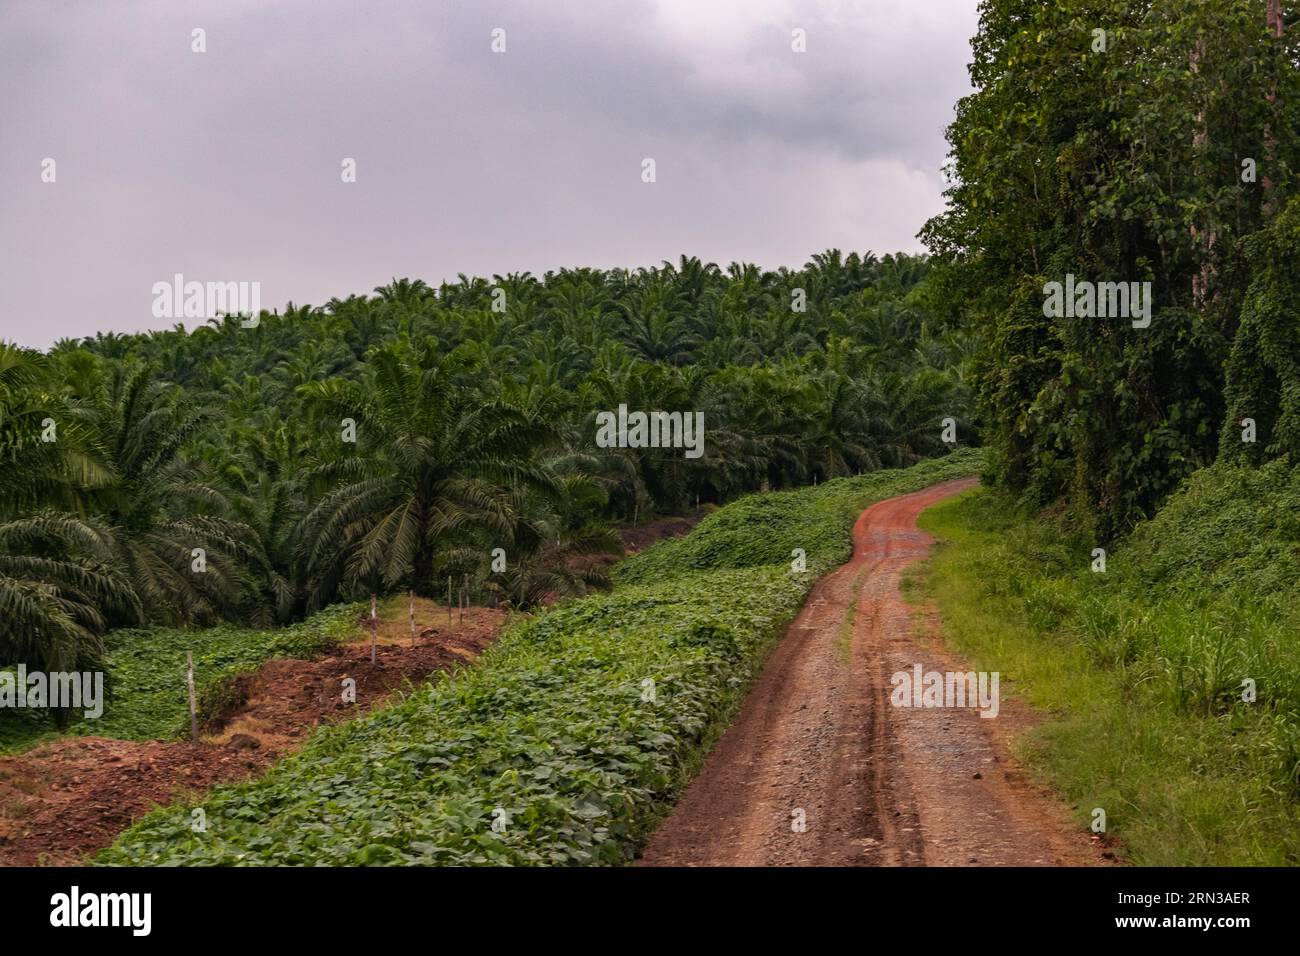 Incredibile vista di una piantagione di palme da olio e della foresta pluviale adiacente. Immagine molto significativa Foto Stock